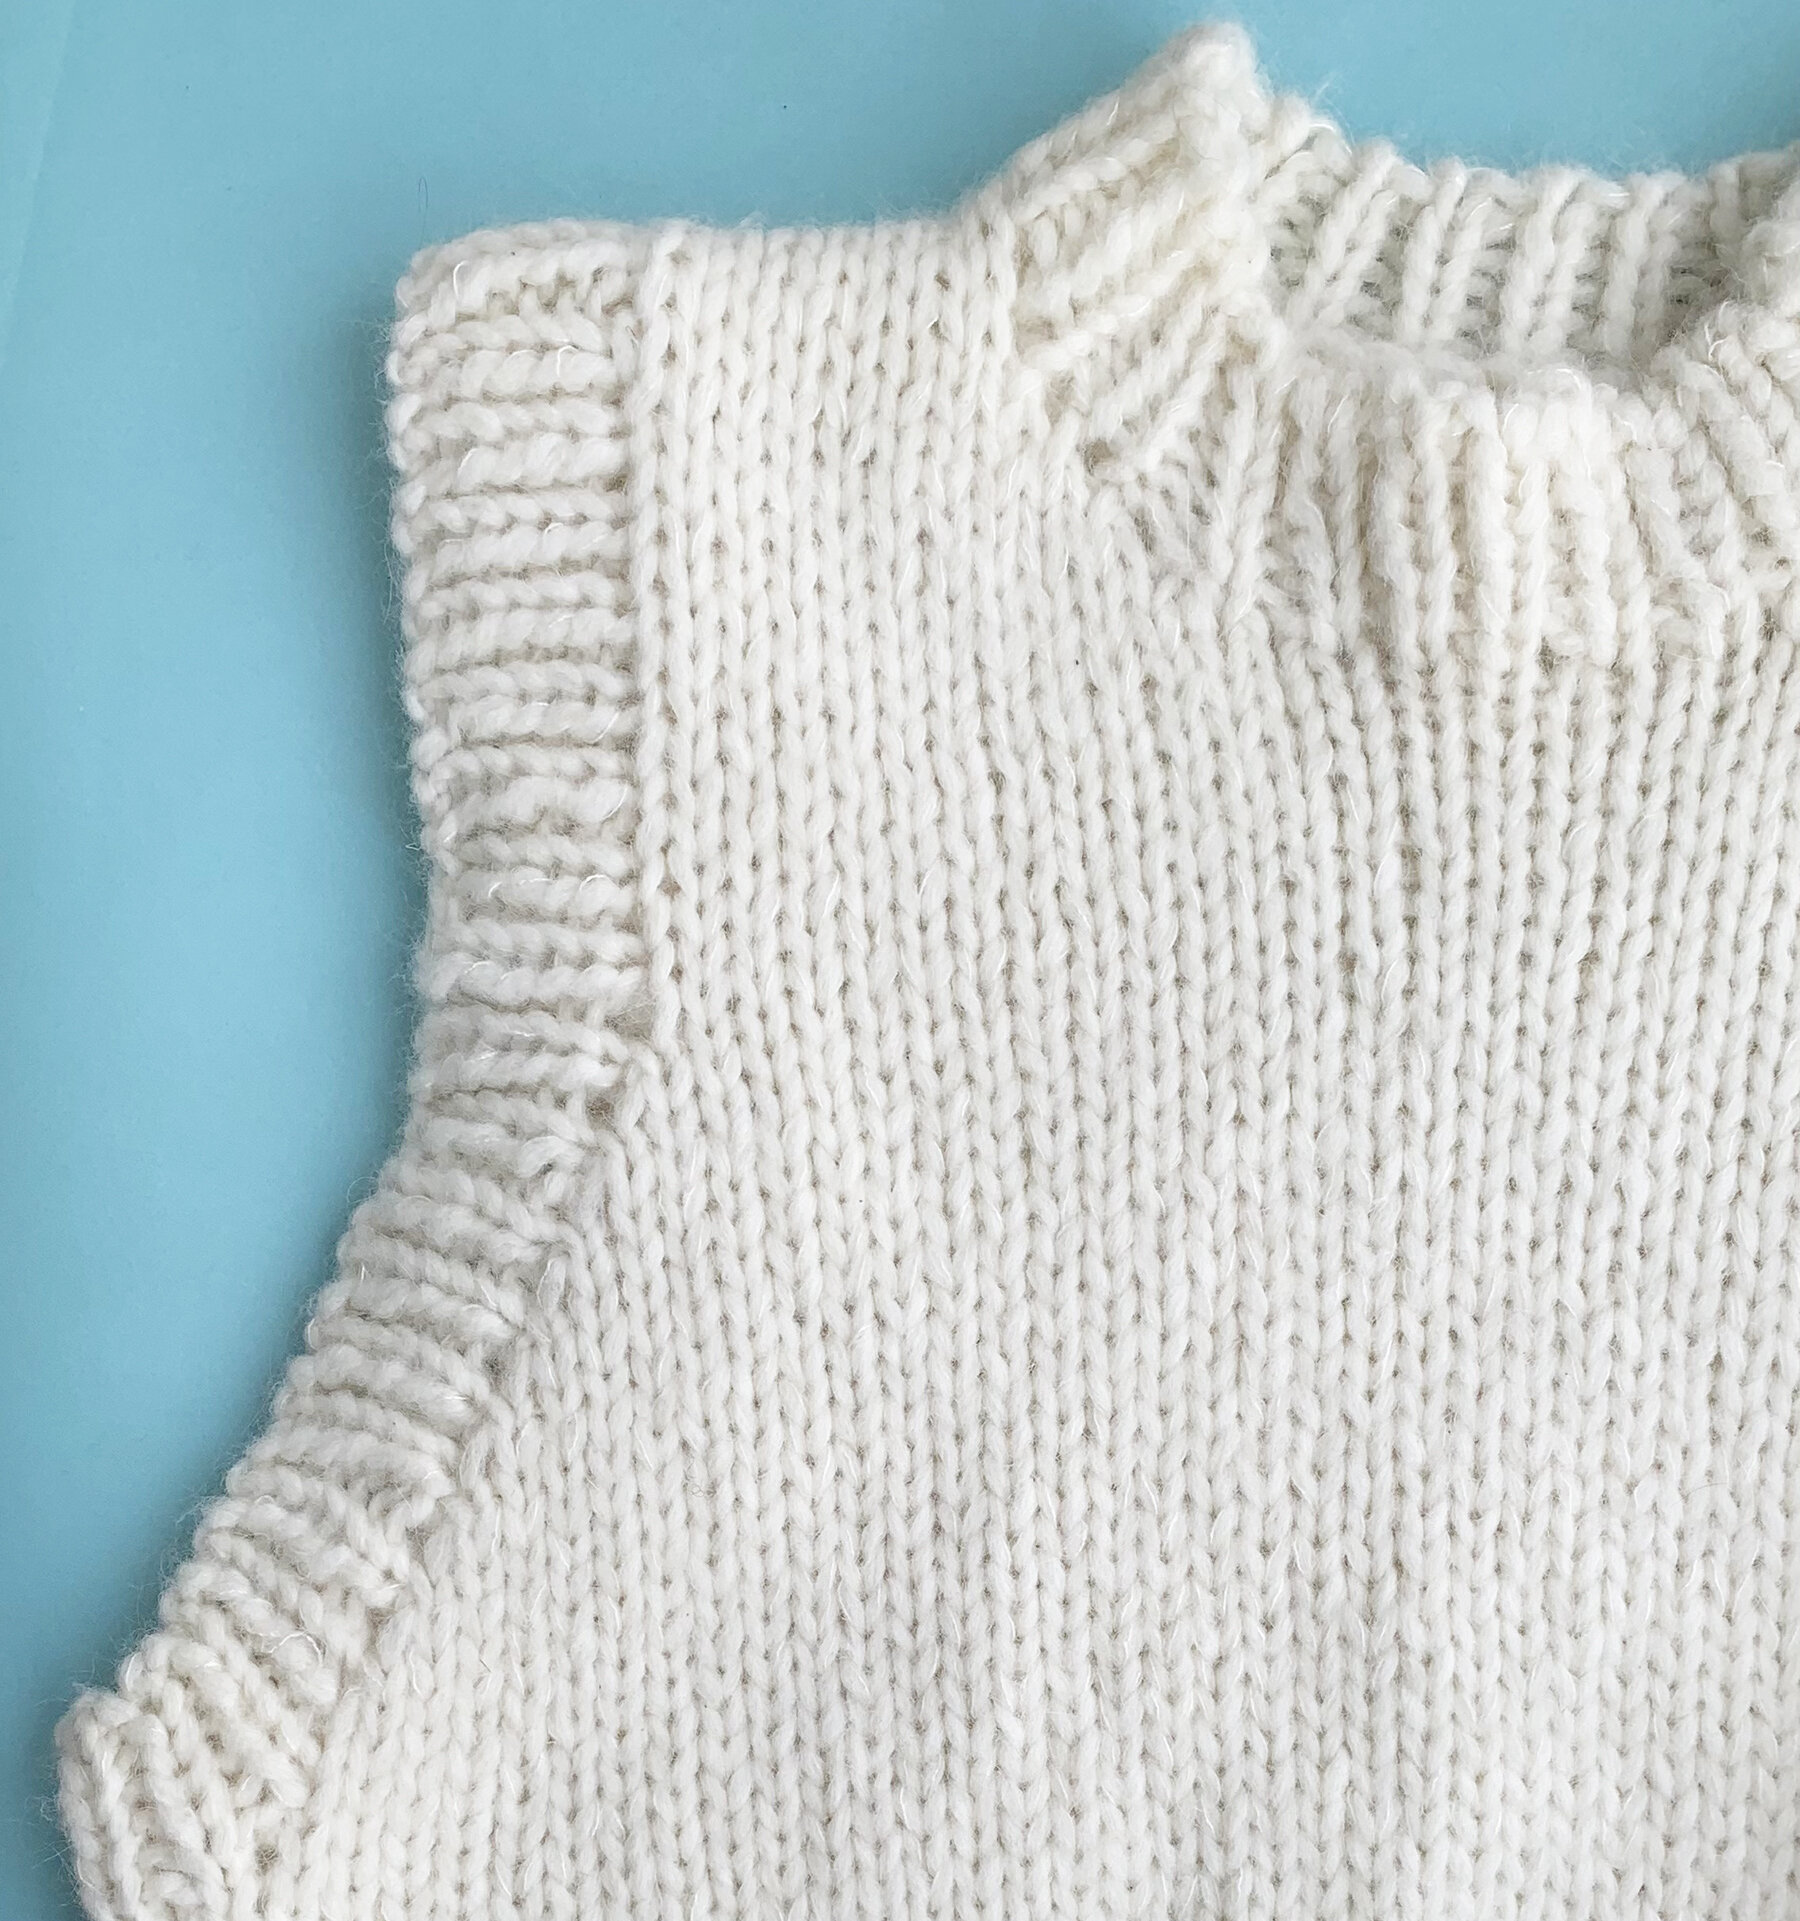 LIKE A CLOUD, LIKE A HUG - Petite Knit's Holiday Slipover Sweater ...